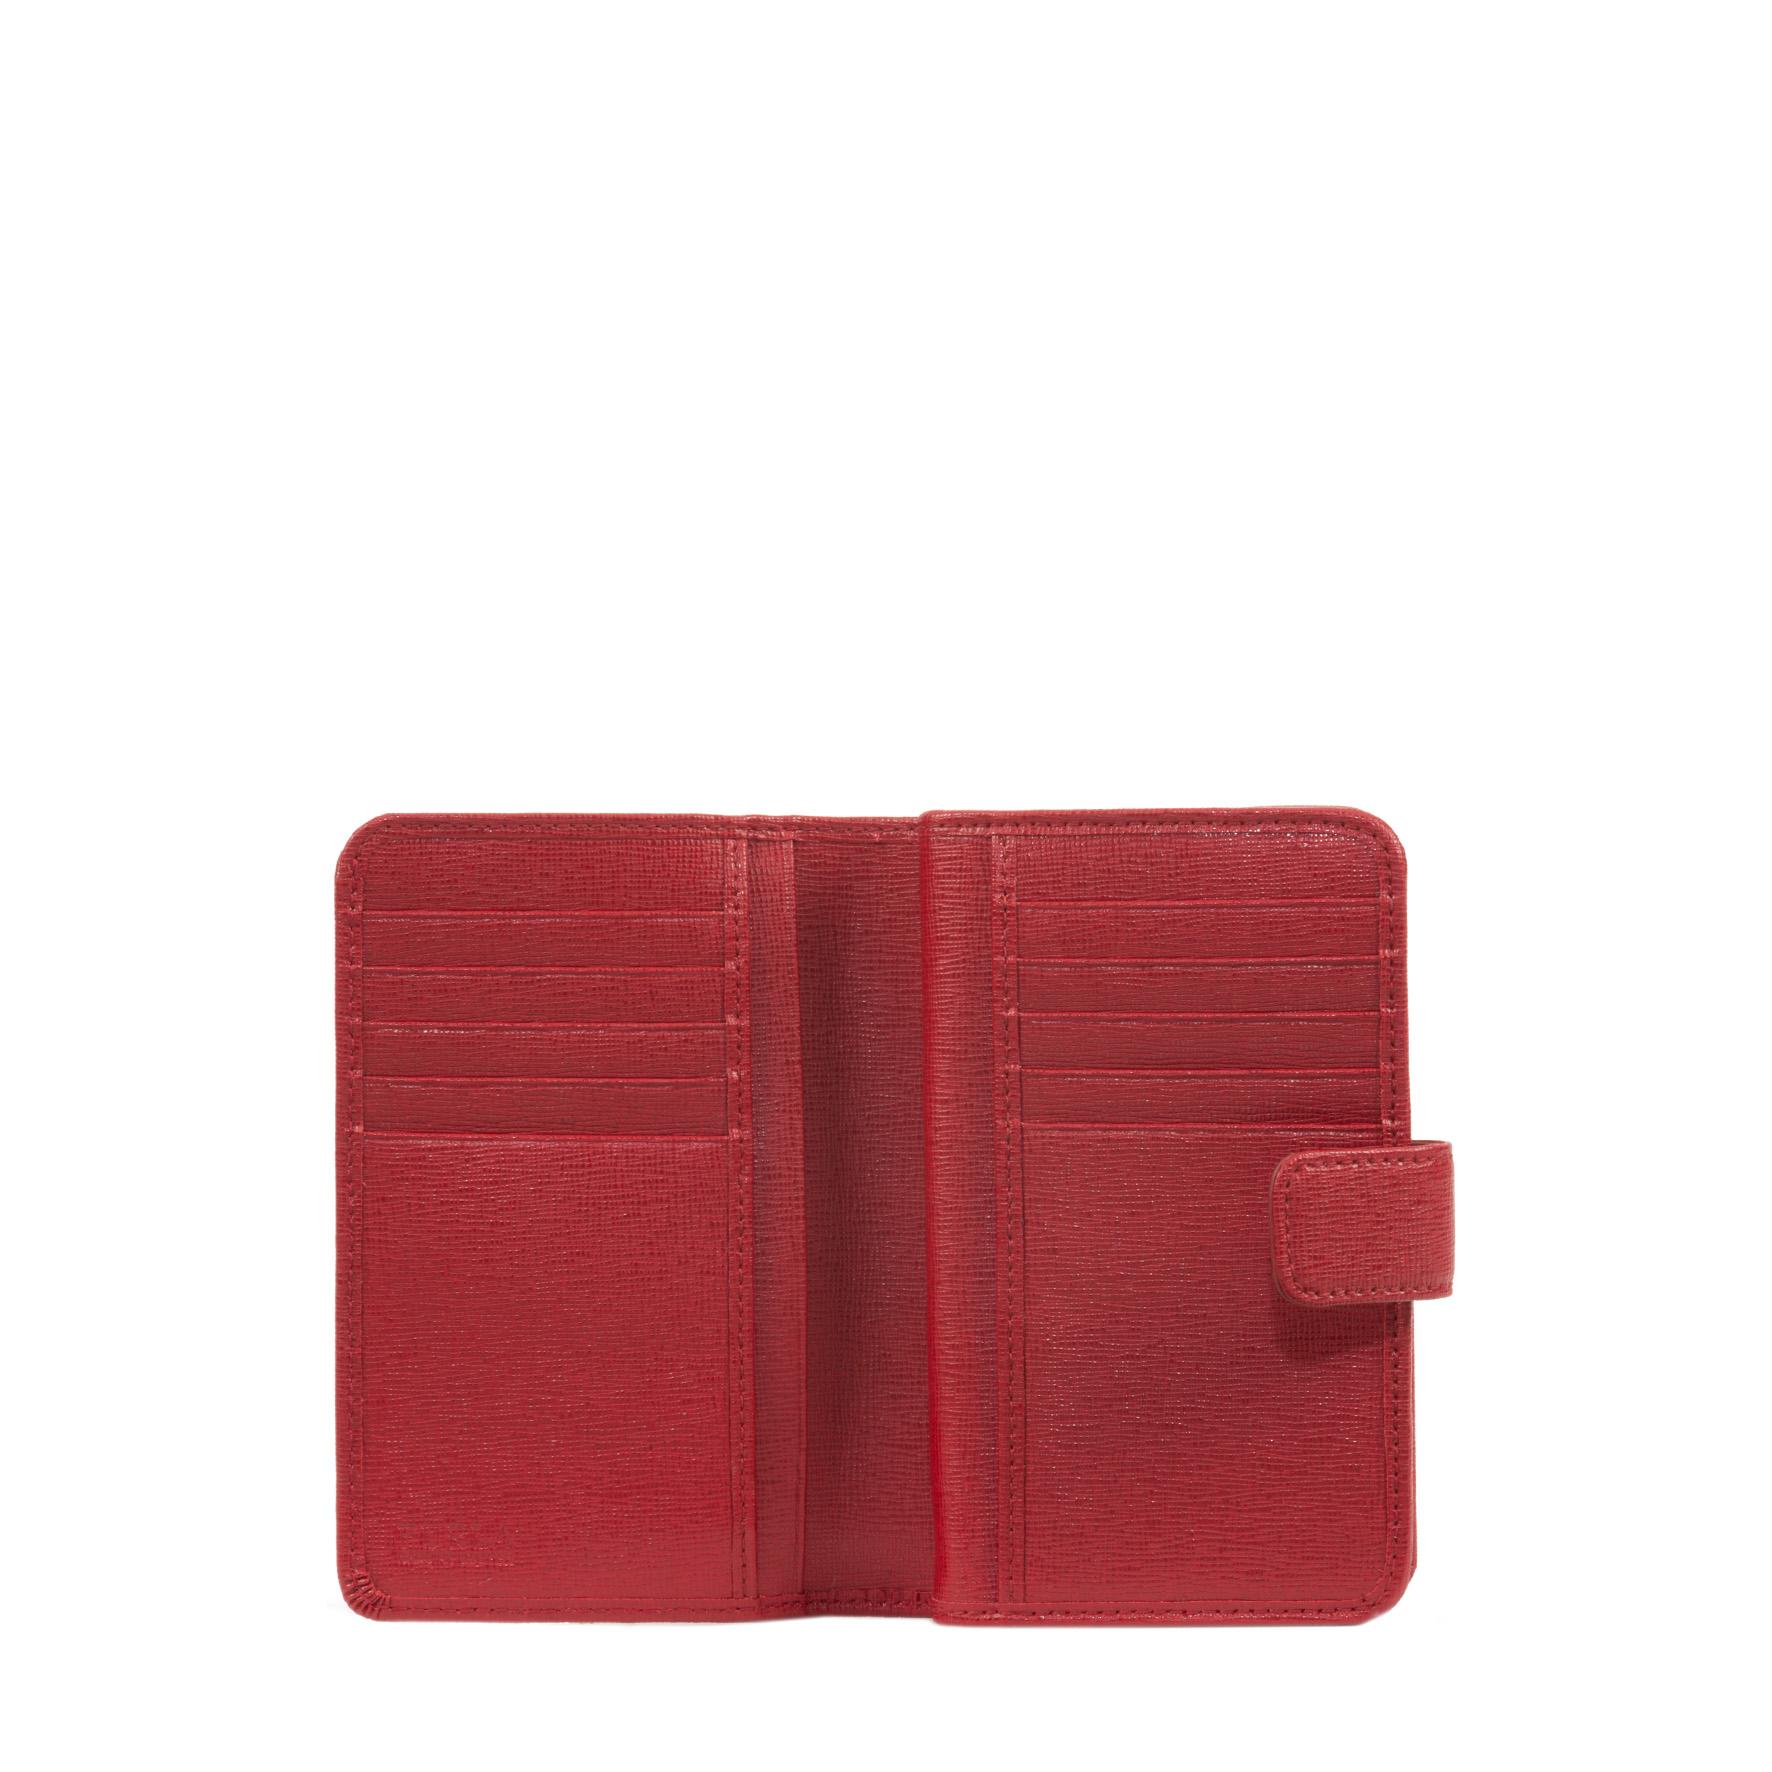 Dettaglio portafogli rosso con 12 scomparti per carta di credito 